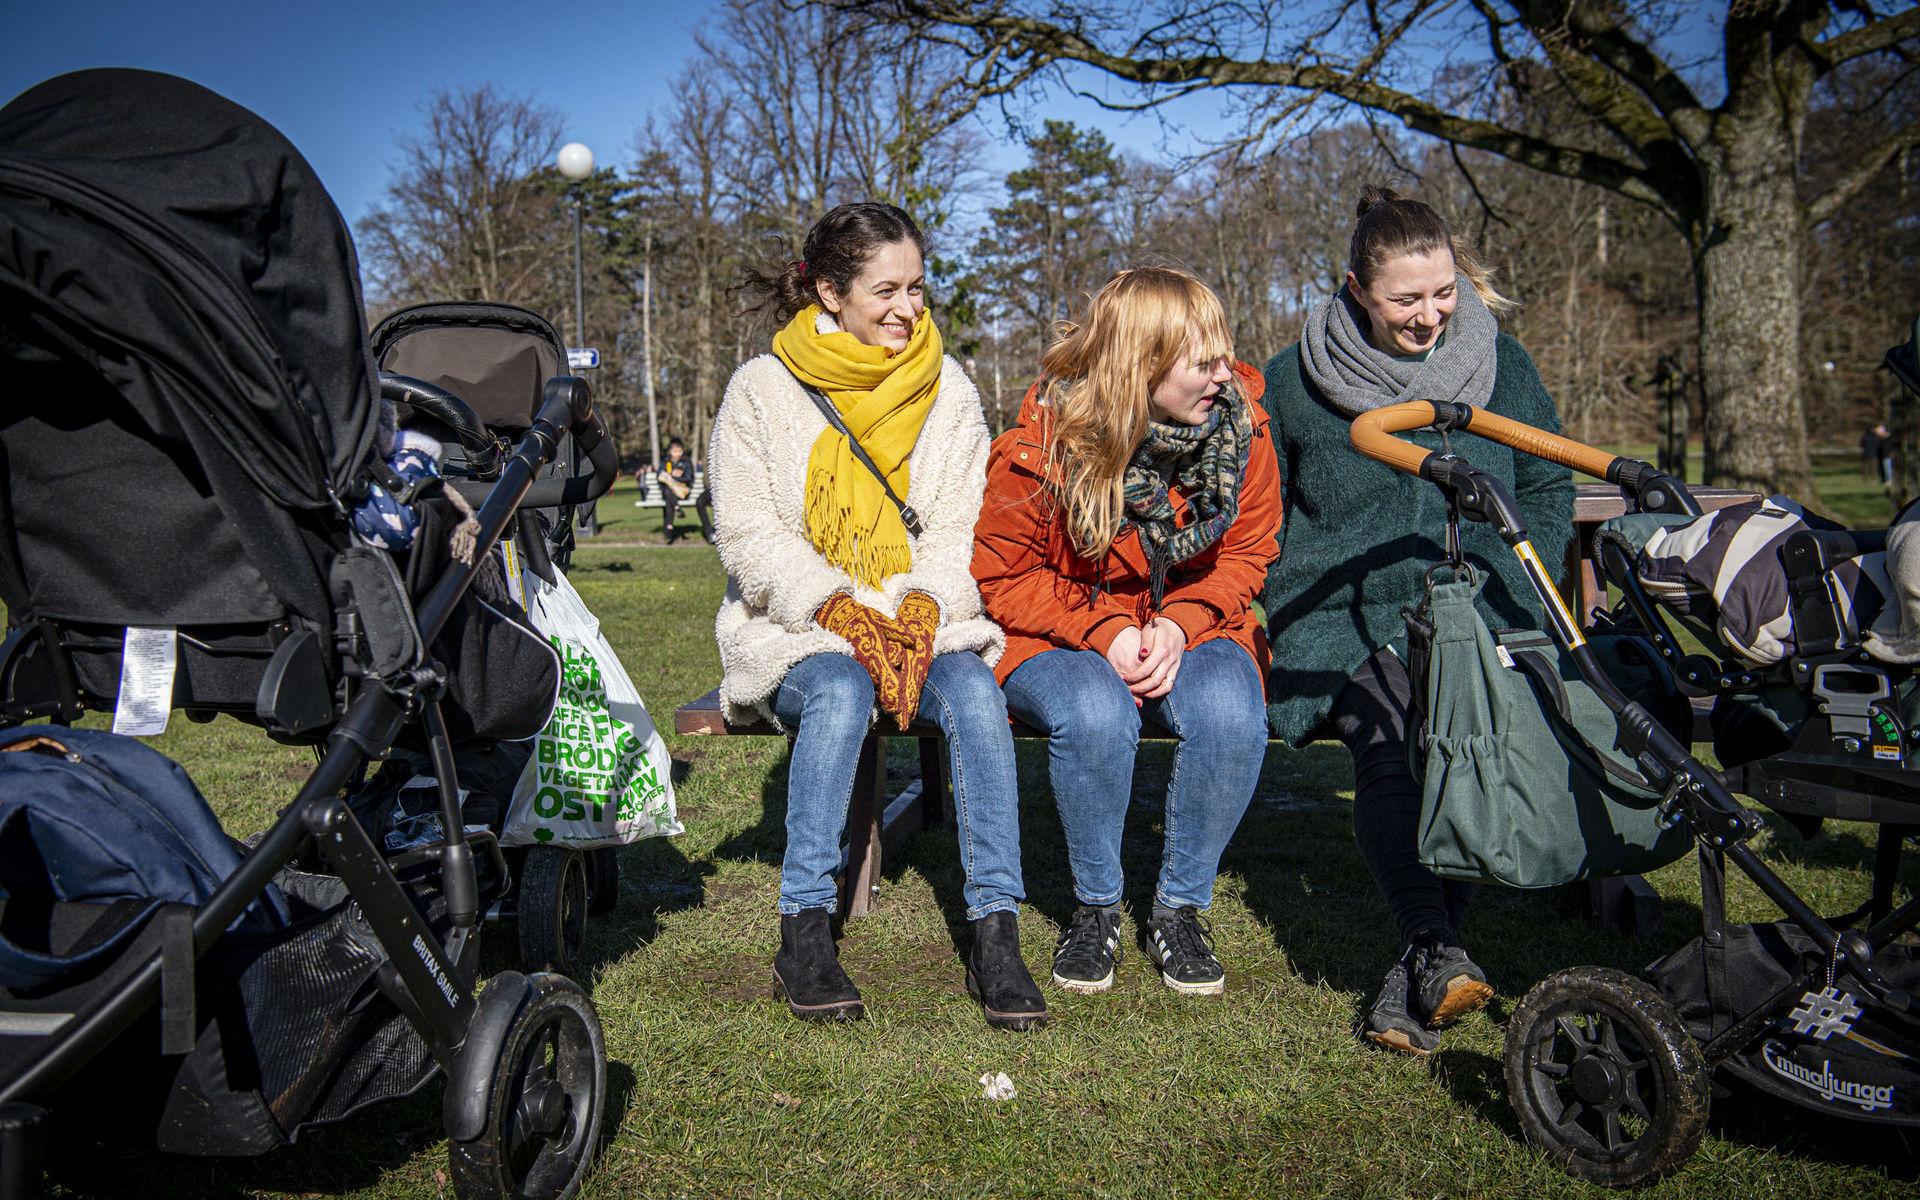 Vännerna Remina Kisimov, Emma Nordenberg och Hanna Söderquist tar ett paus i solen på en parkbänk i Slottsskogen innan de går vidare med barnen för att titta på djuren i parken.